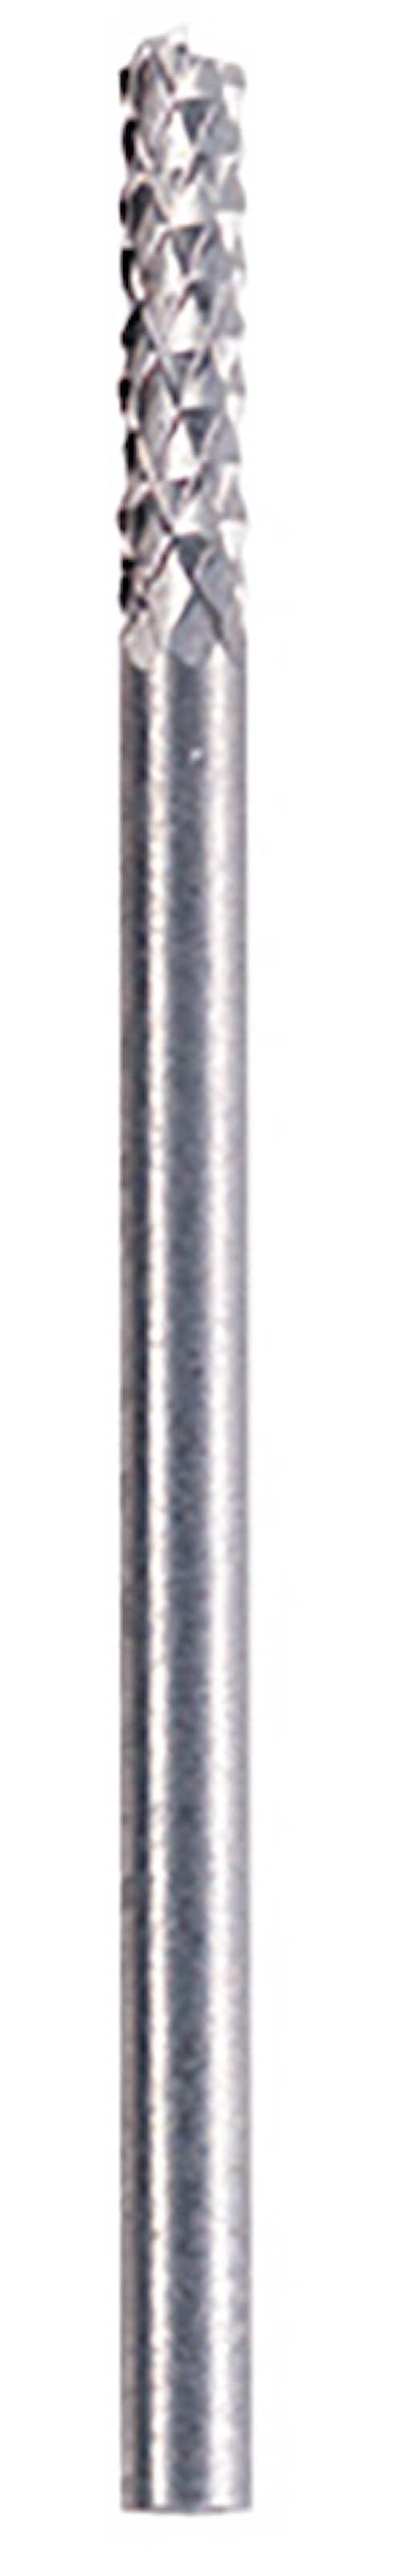 Dremel Fugefræsejern 3,2mm (570)